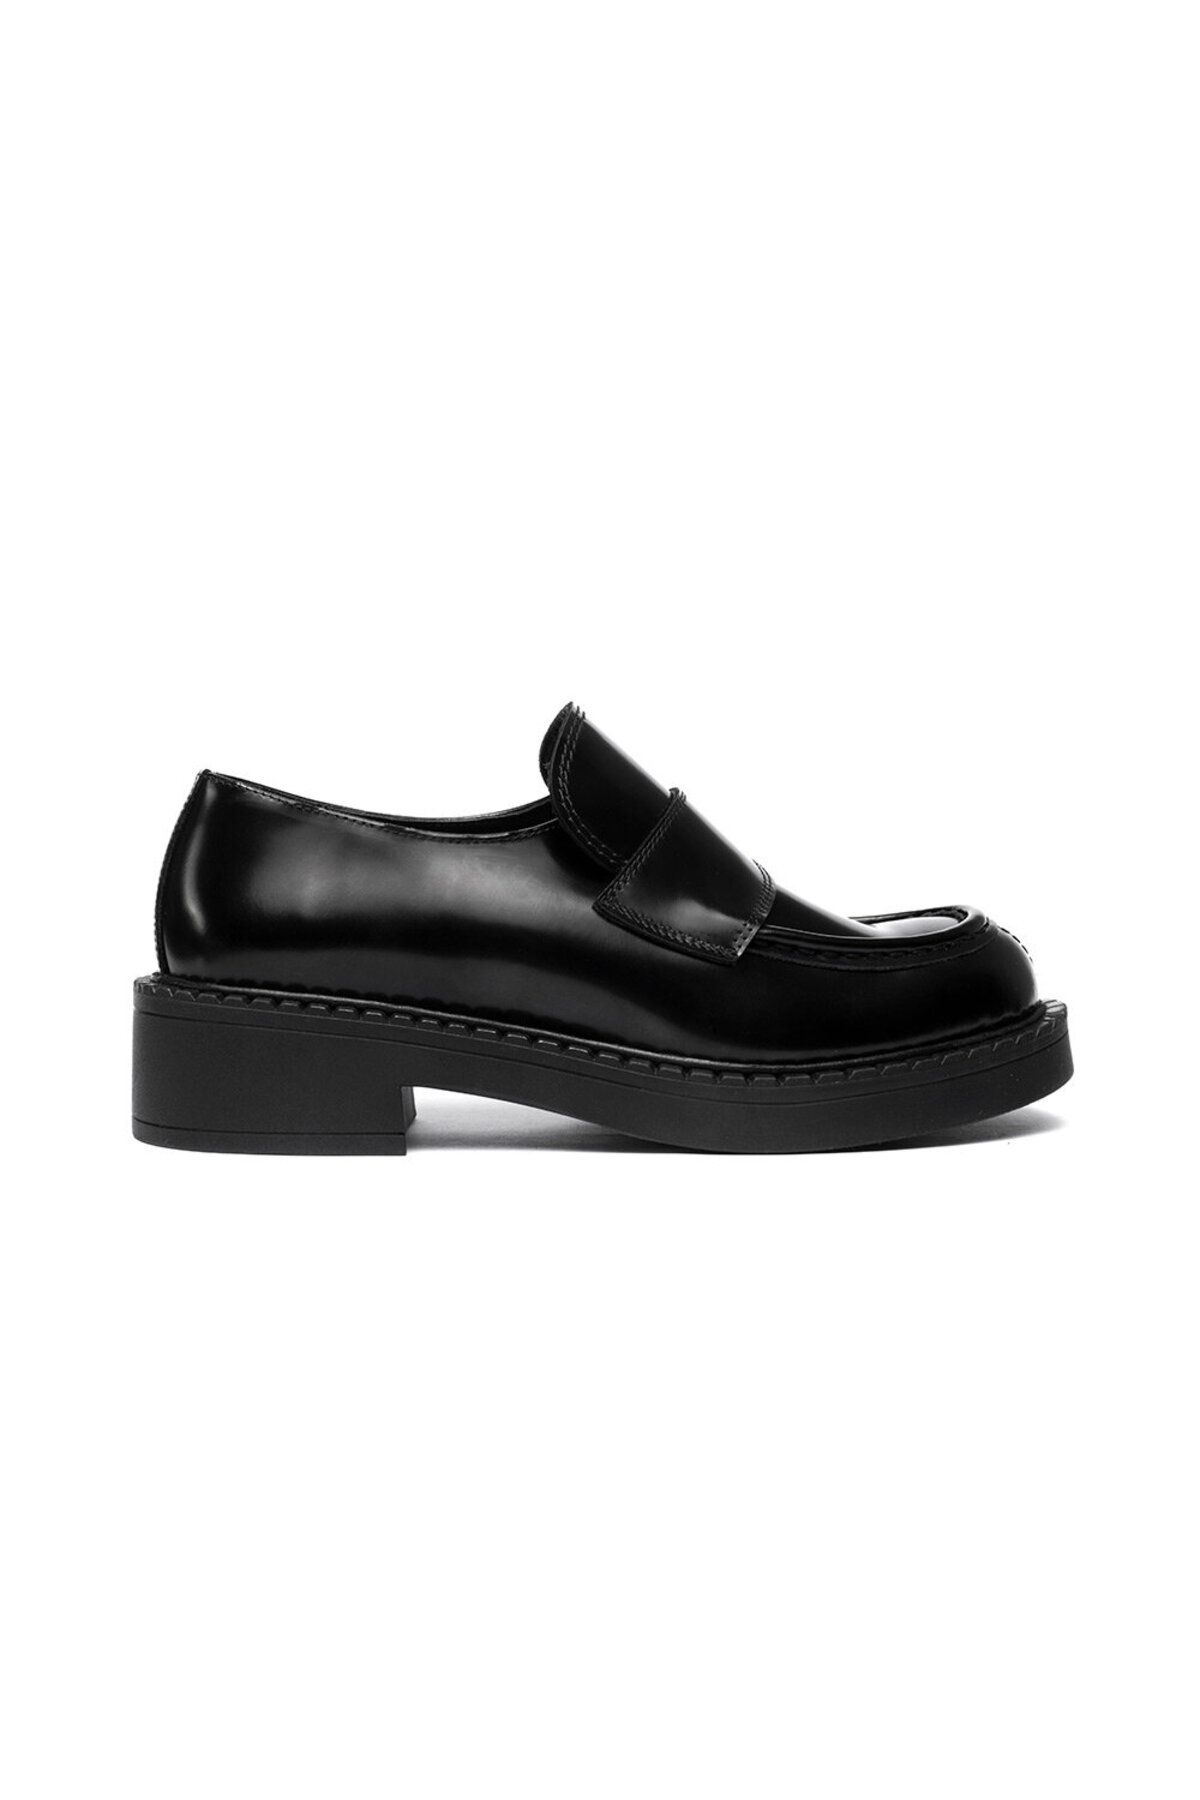 Greyder Kadın Siyah Hakiki Deri Loafer Ayakkabı 3k2ua72211